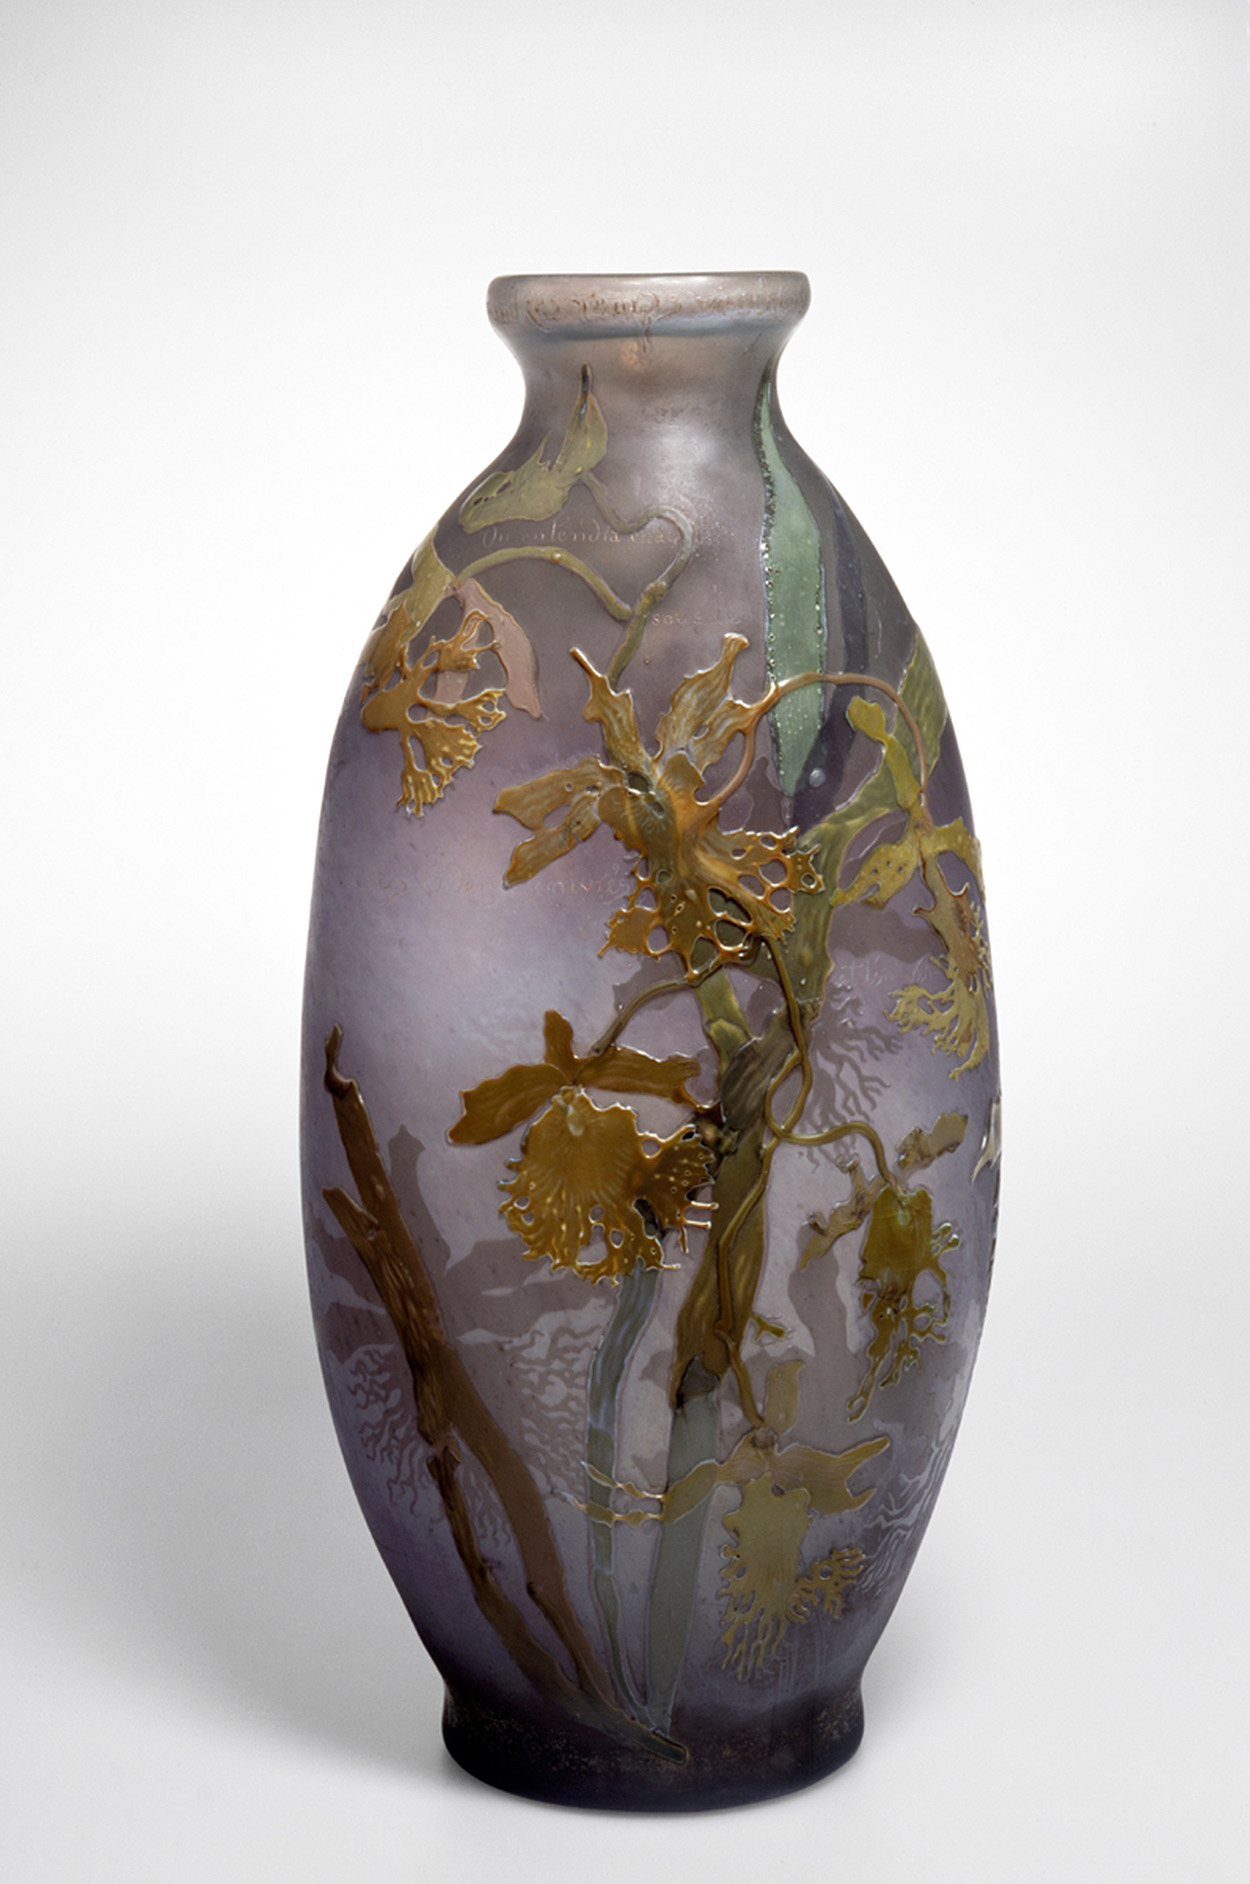 花瓶 by Emil Gallé - 1899 - 43 x 20.5 cm 